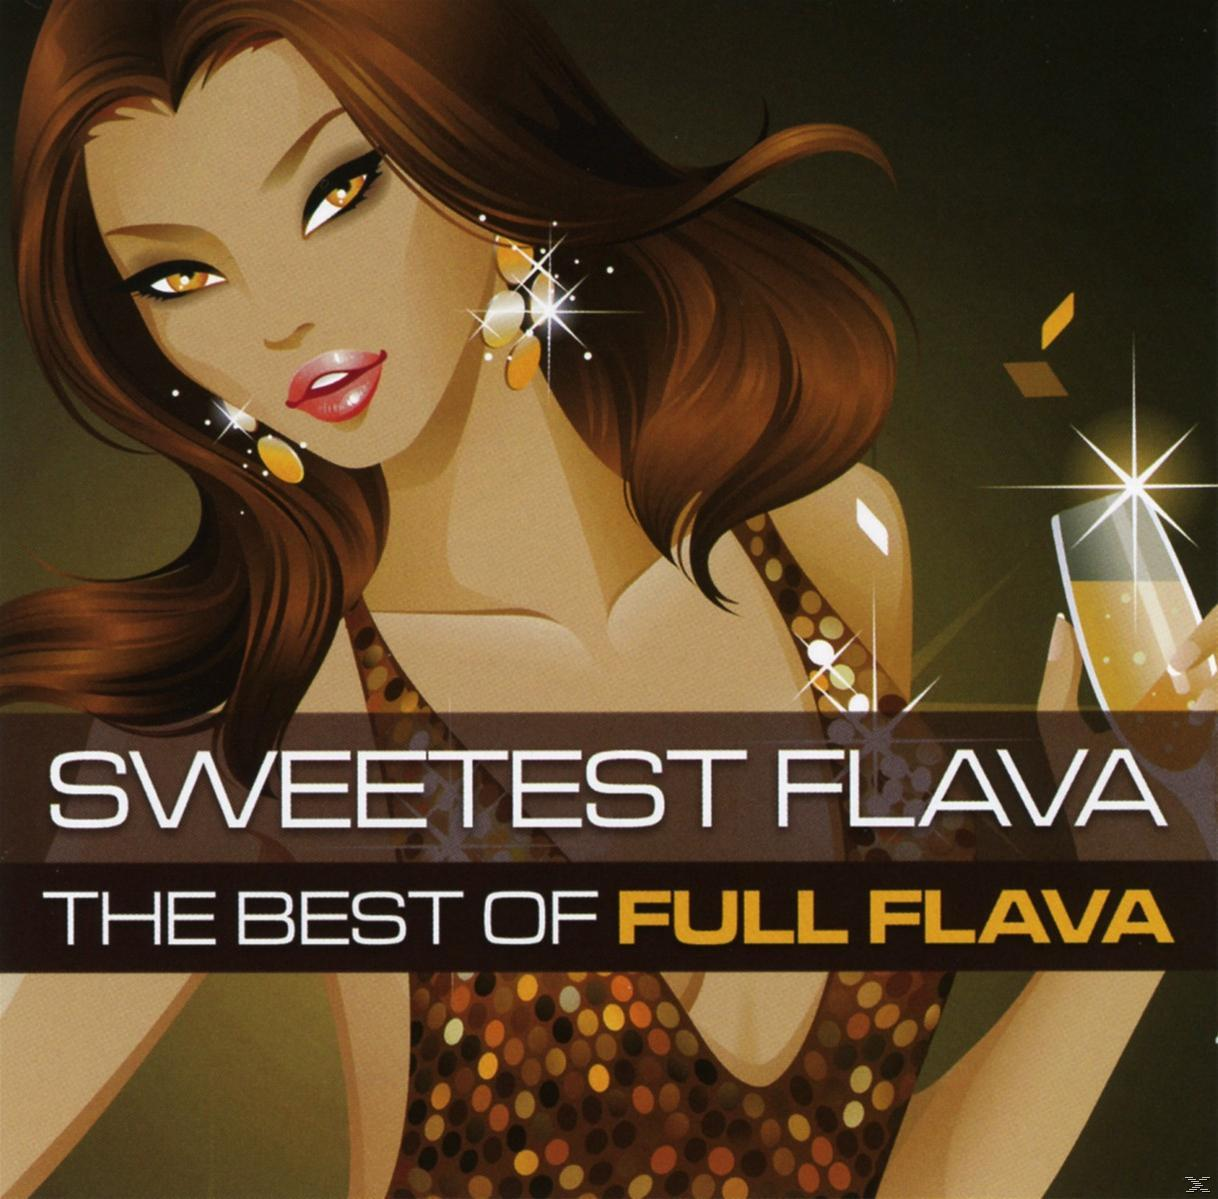 Full Flava - The Sweetest Flava - Best (CD) Flava: Of Full